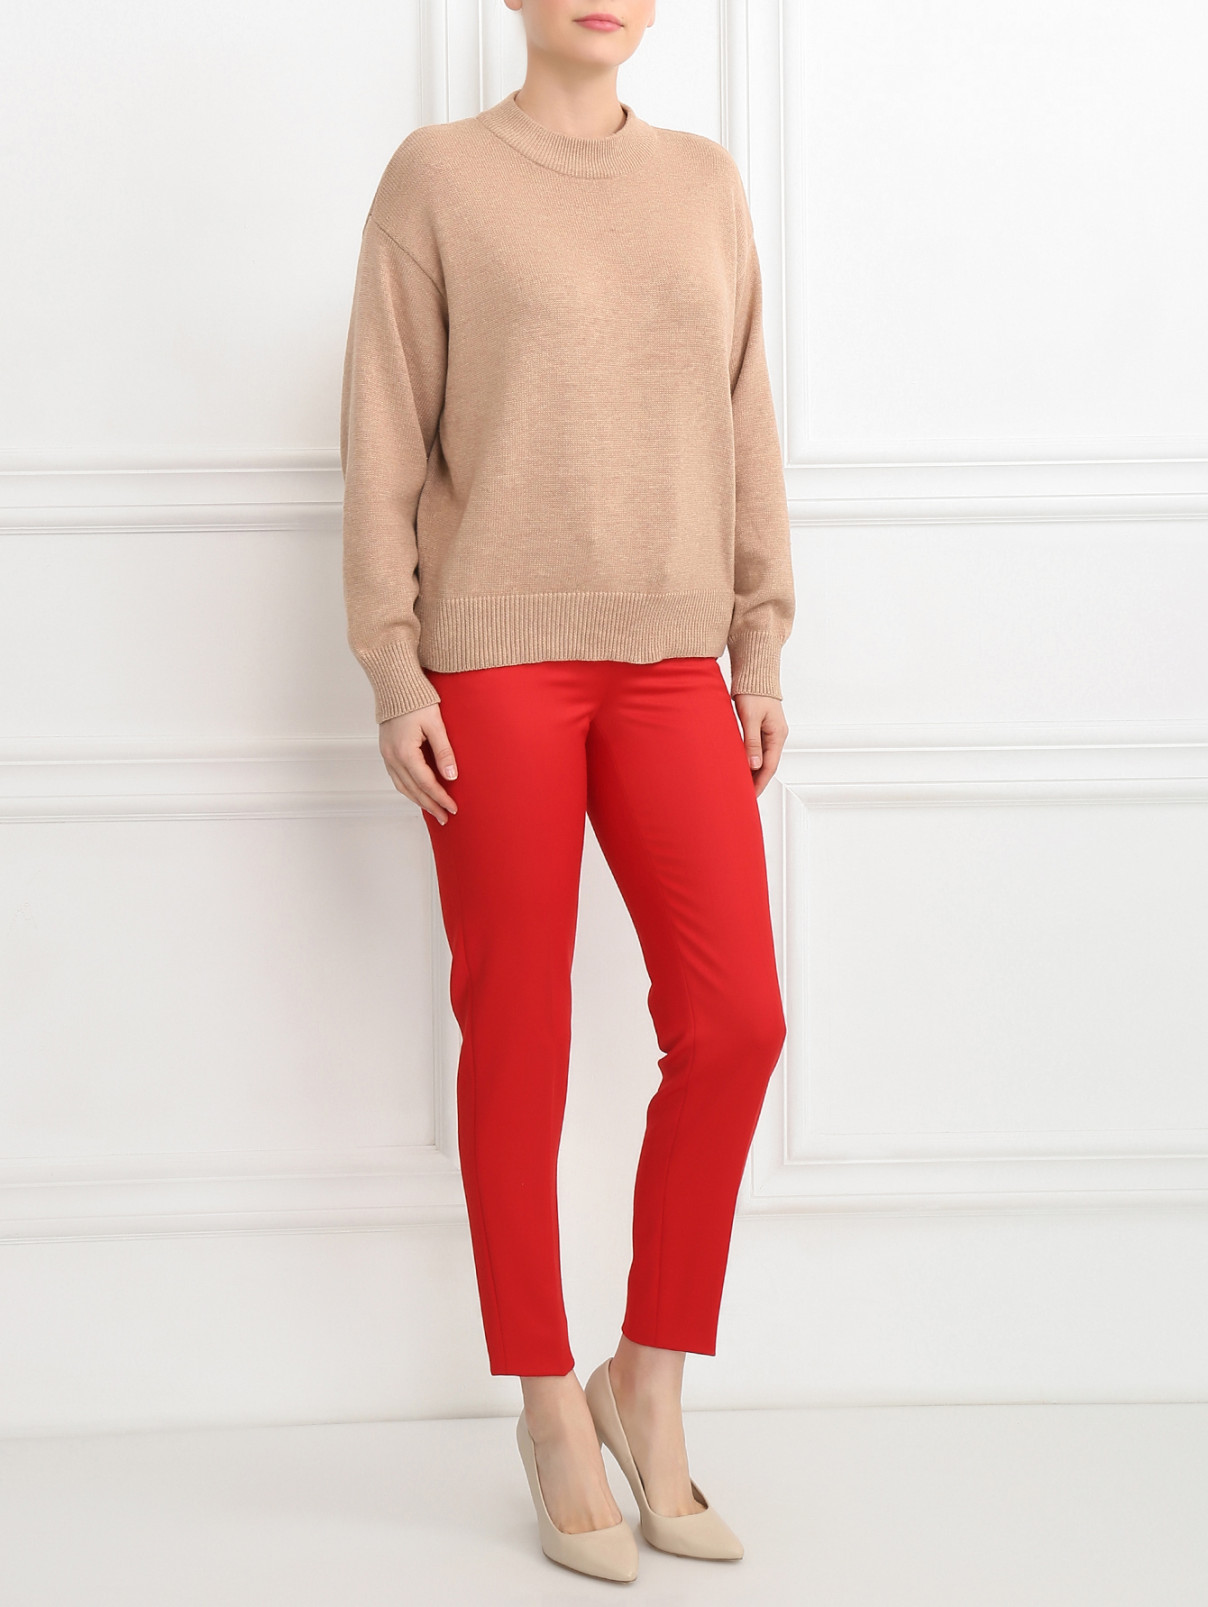 Узкие брюки из шерсти Moschino Boutique  –  Модель Общий вид  – Цвет:  Красный